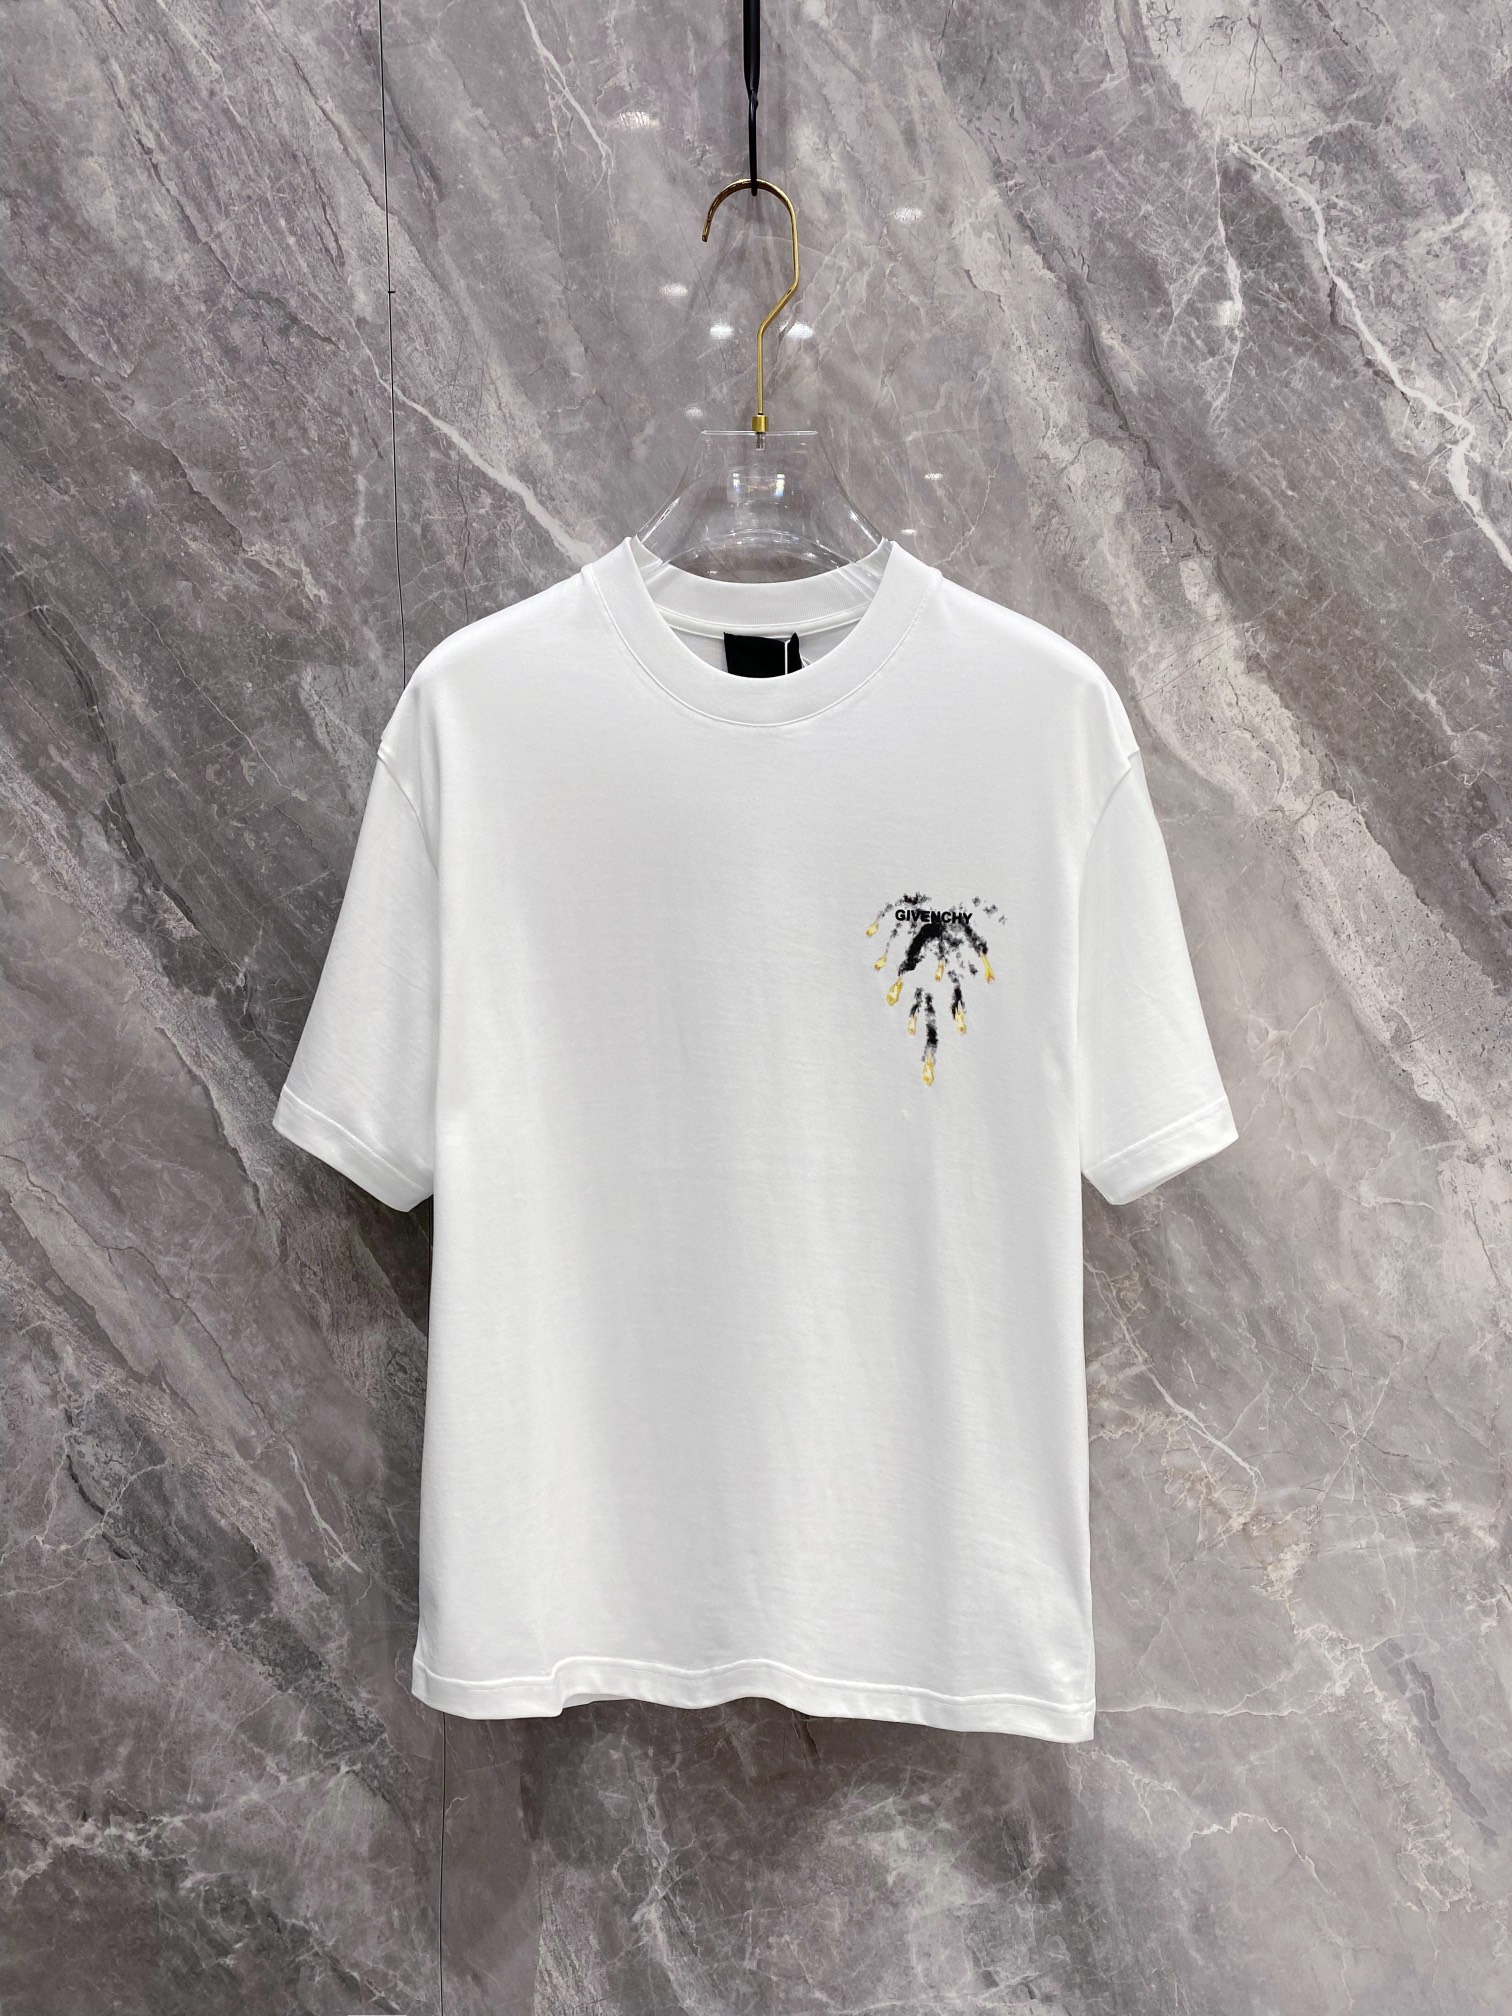 Givenchy Clothing T-Shirt Unisex Short Sleeve